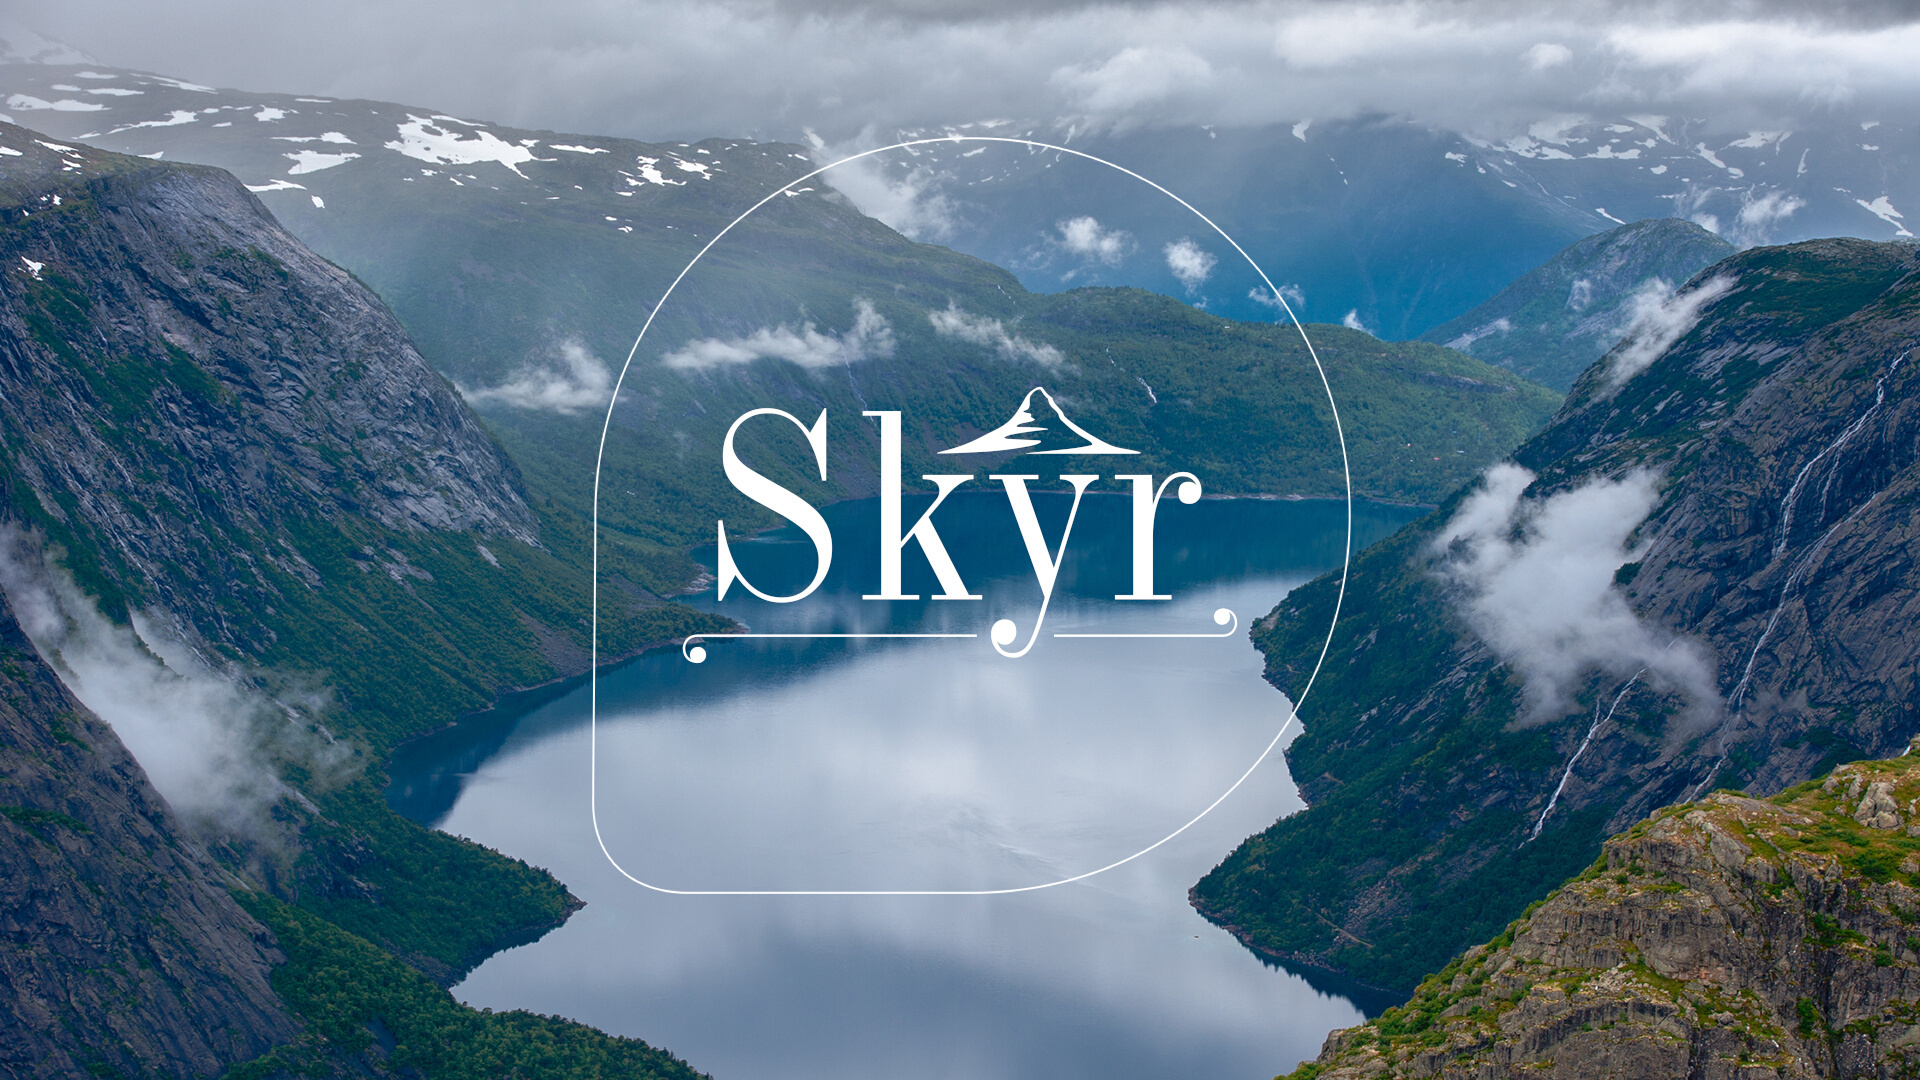 Projekt opakowań linii produktów marki Skyr dla Spółdzielni Mleczarskiej Piątnica - Studio kreatywne Rebrand